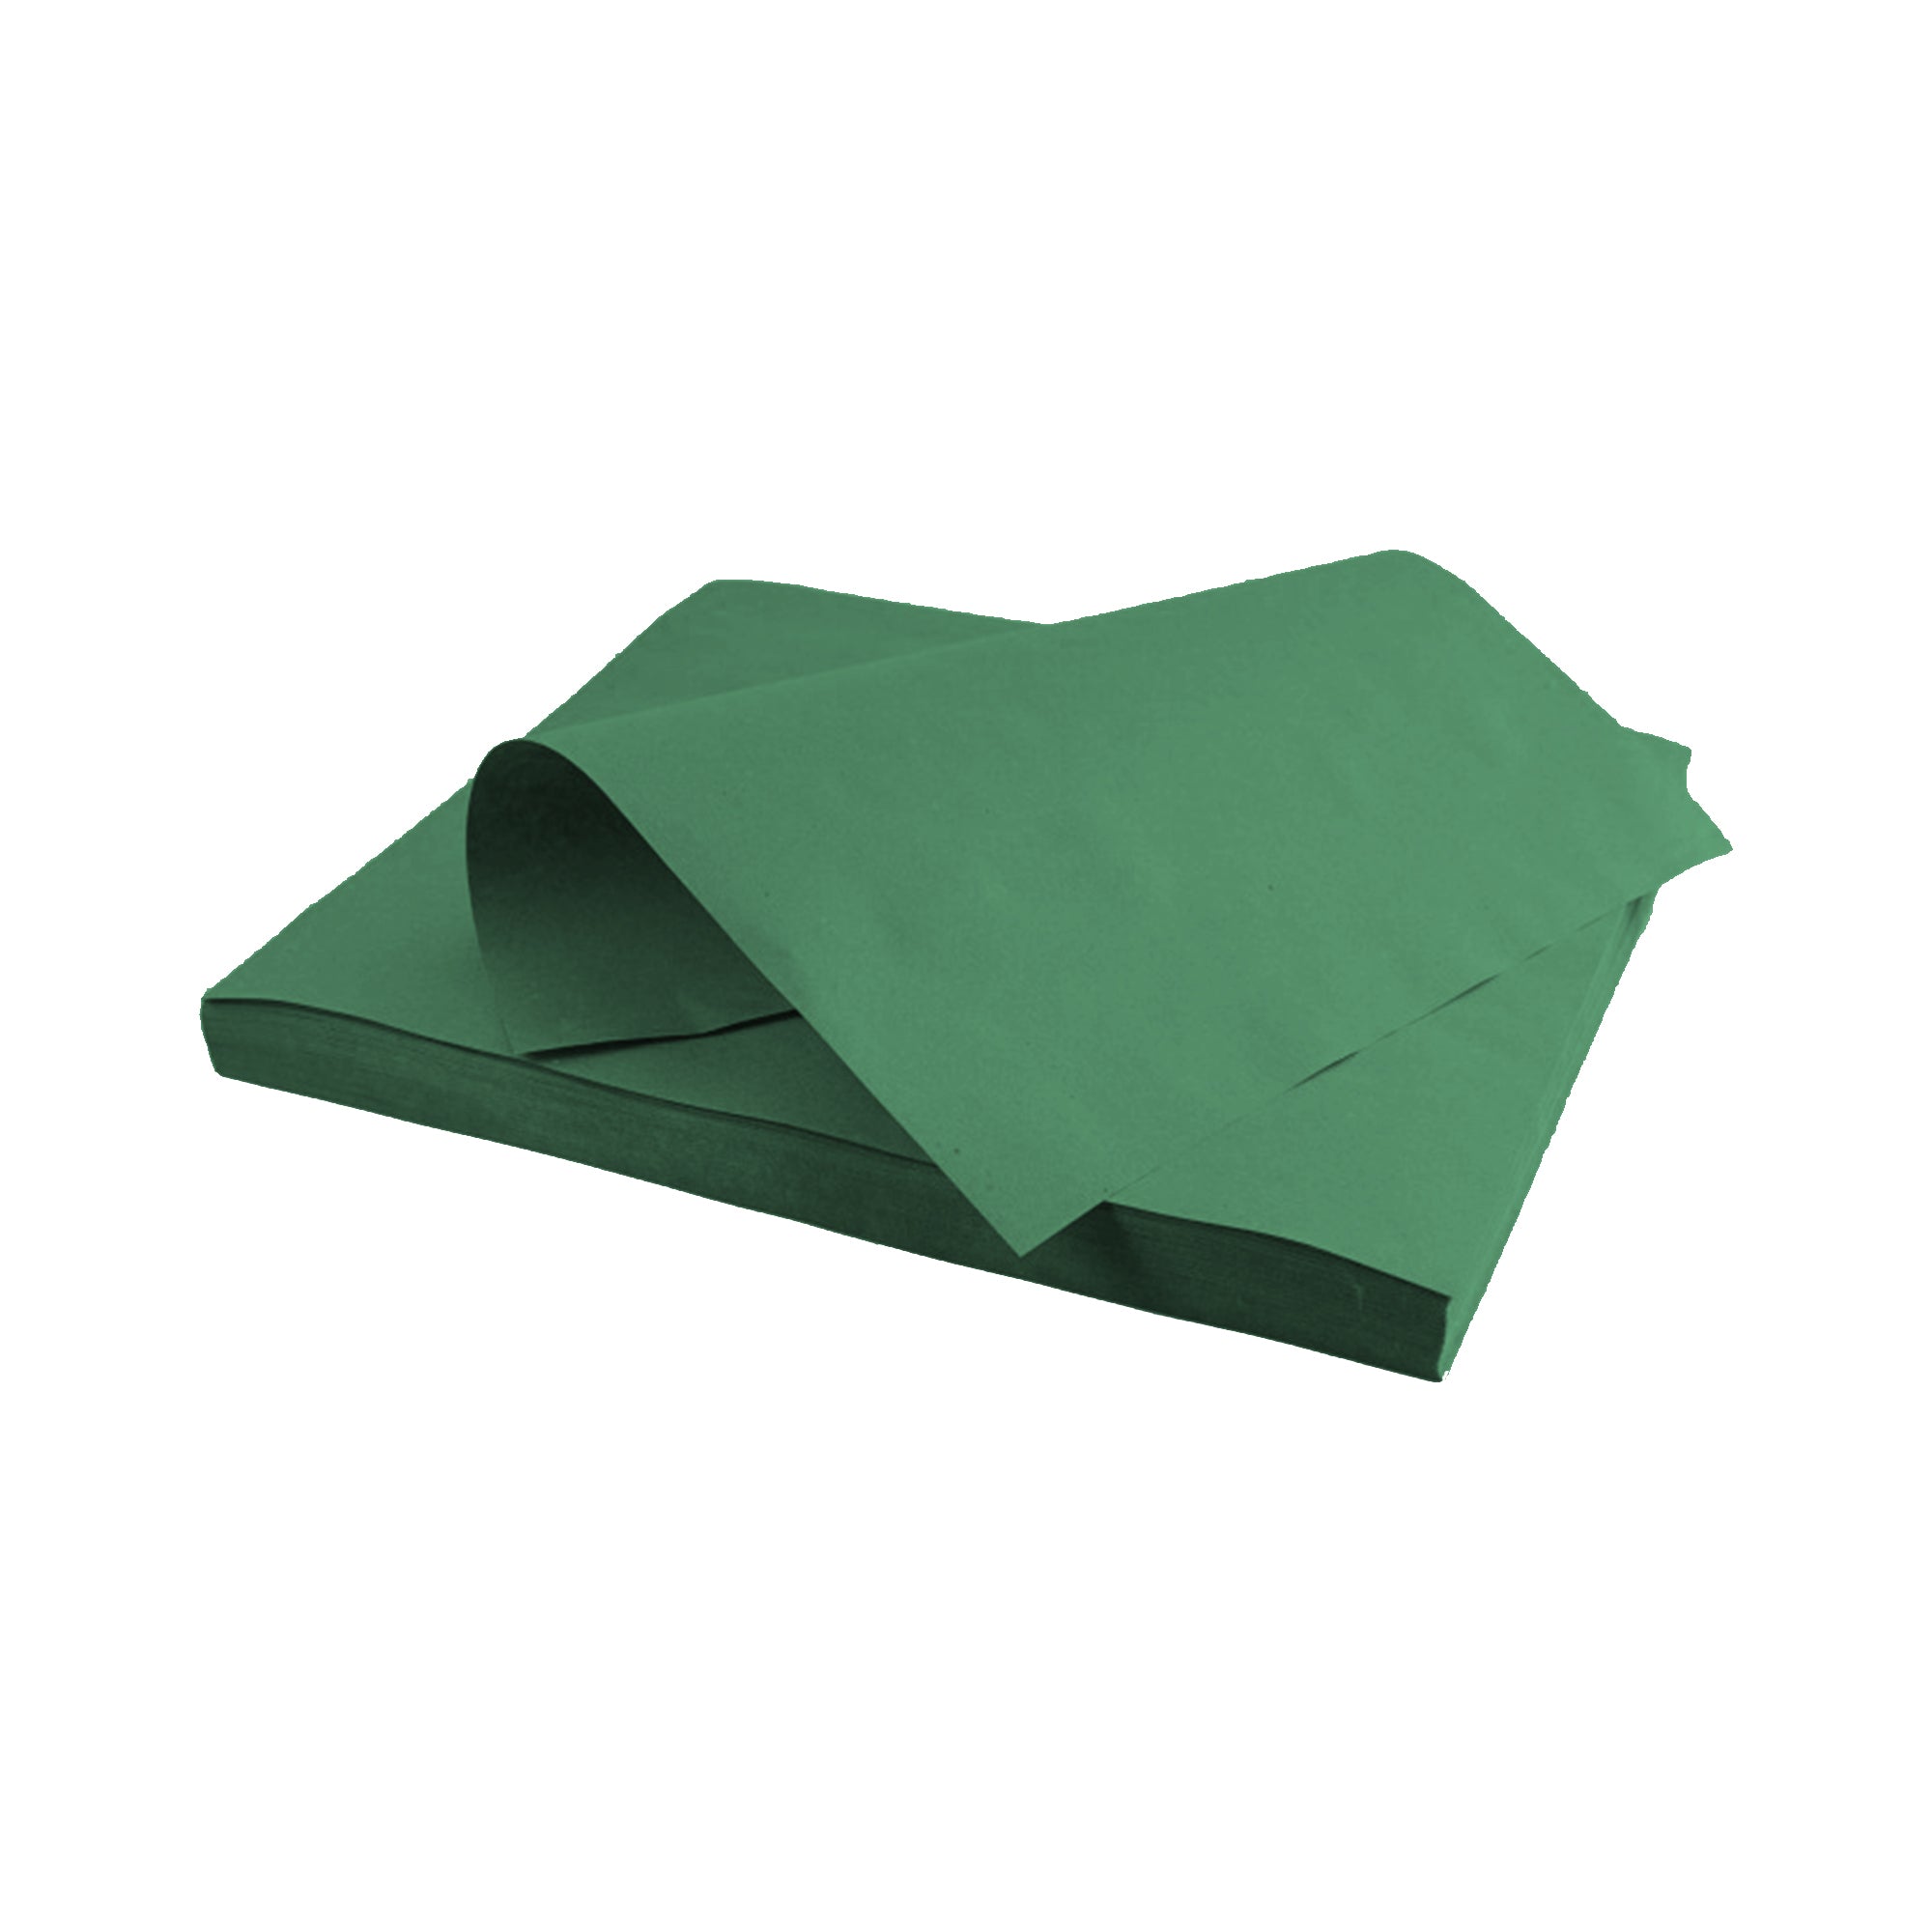 250 pz Tovagliette in carta paglia colore verde € 20,71 + Iva